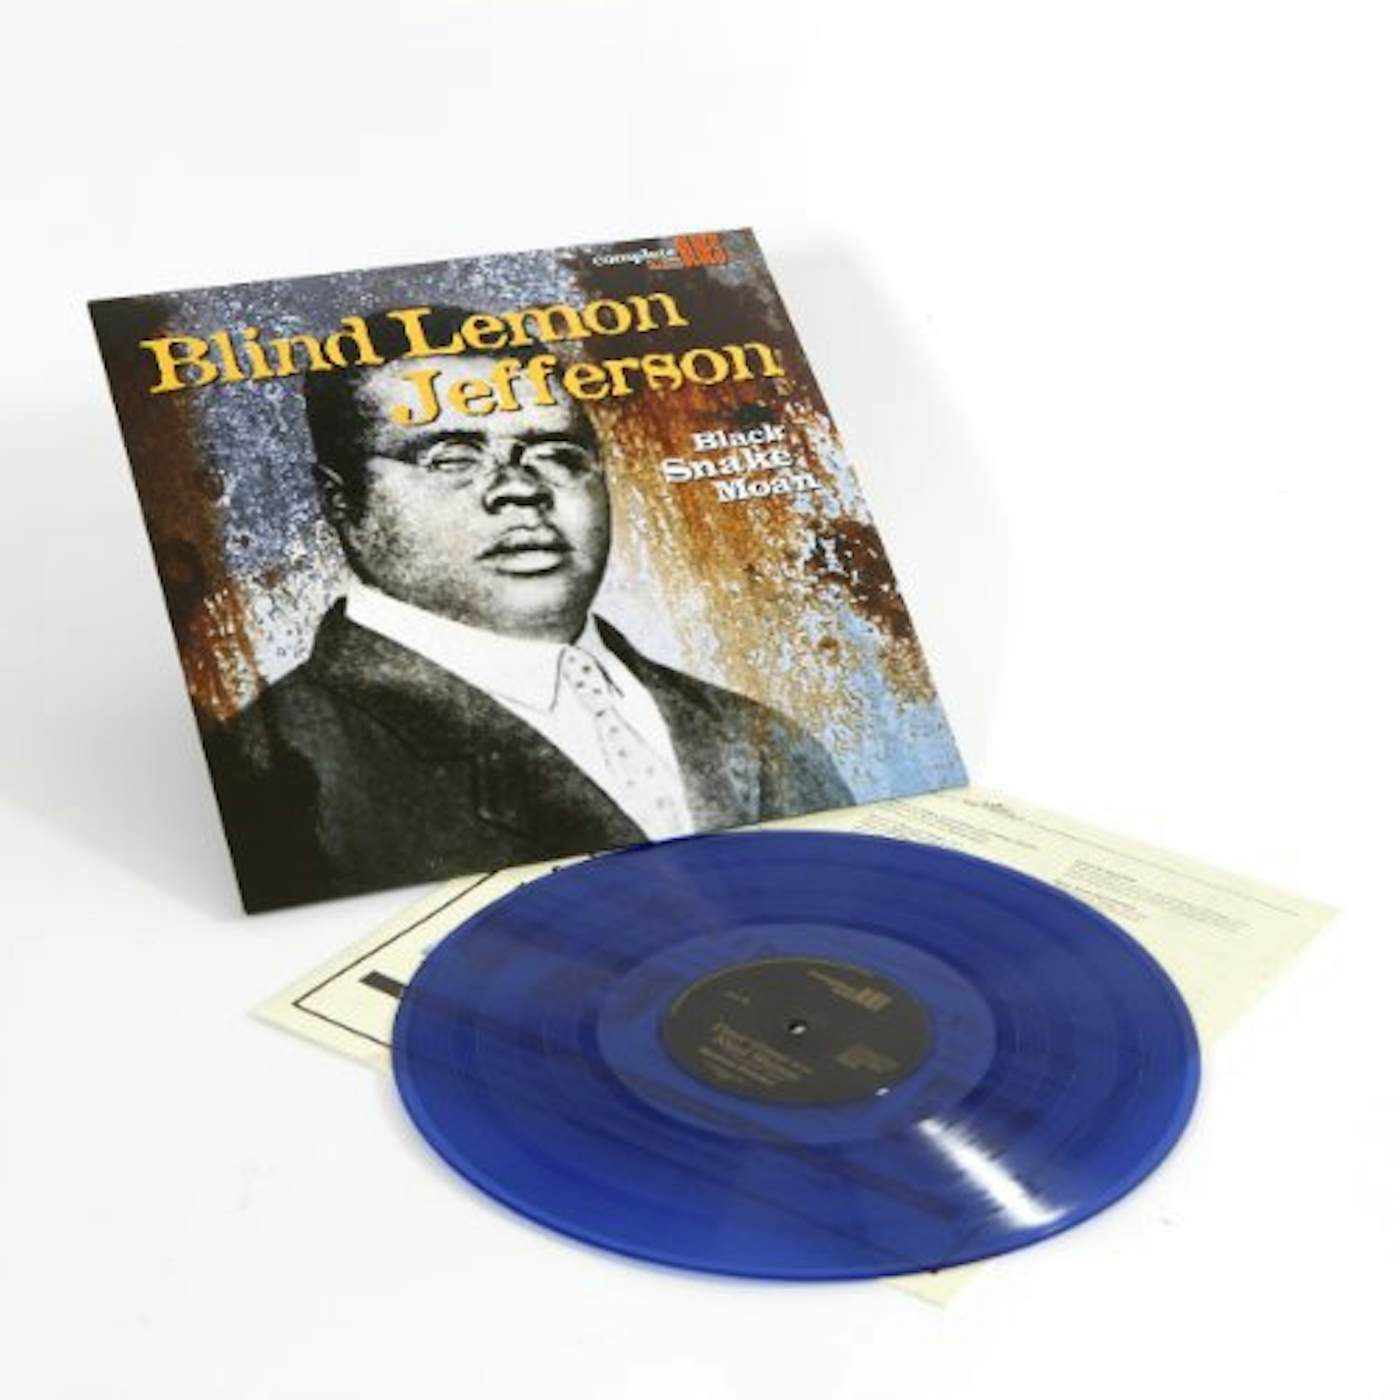 Blind Lemon Jefferson Black Snake Moan Vinyl Record